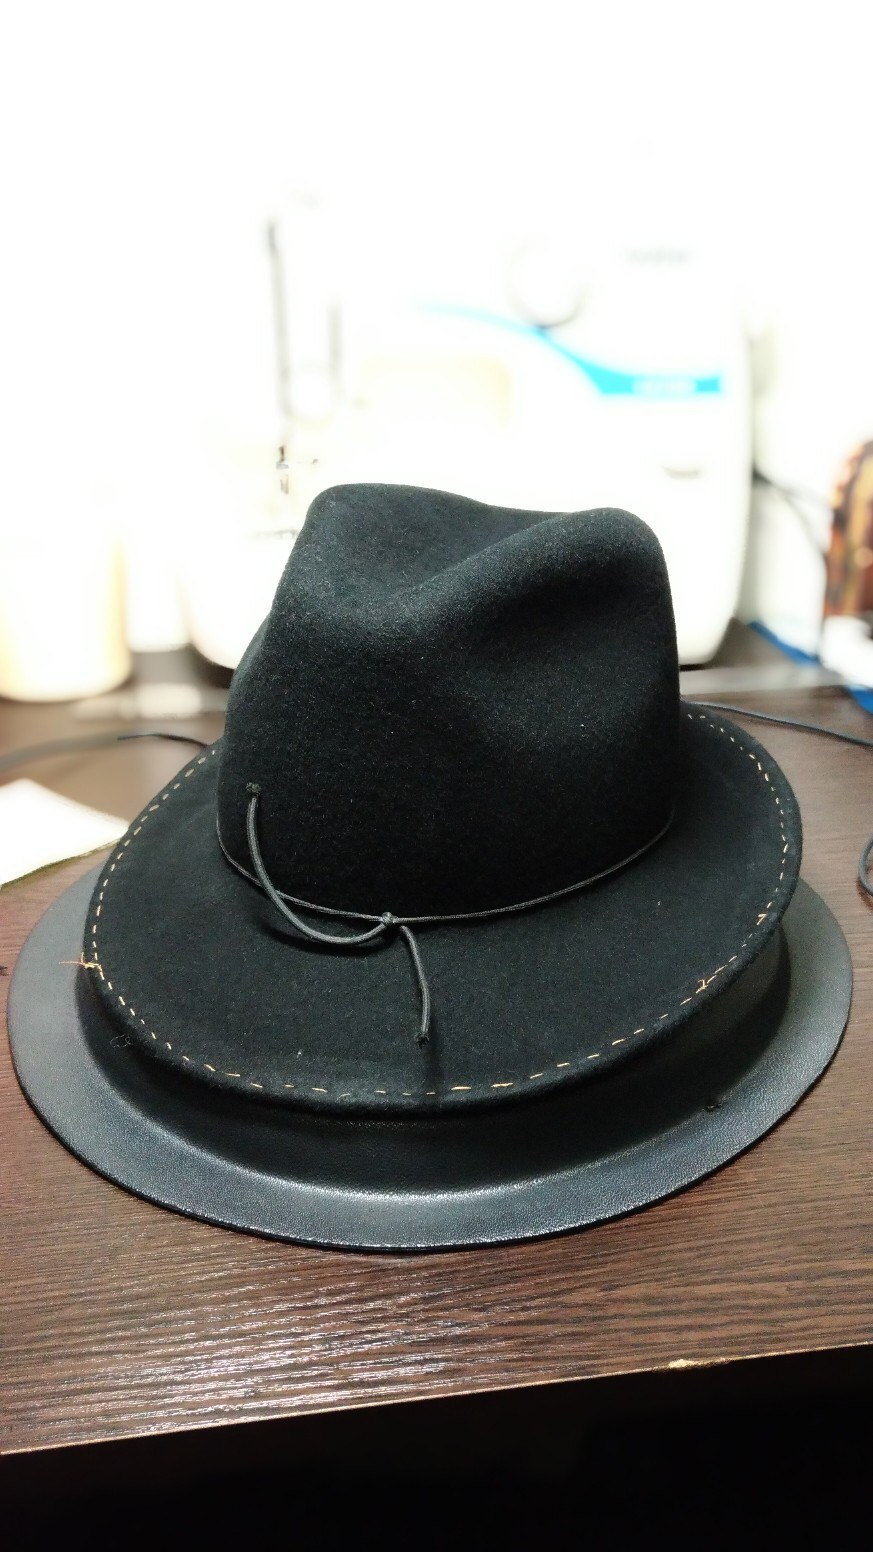 Идеи шляпок и материалы, с которых их можно сделать